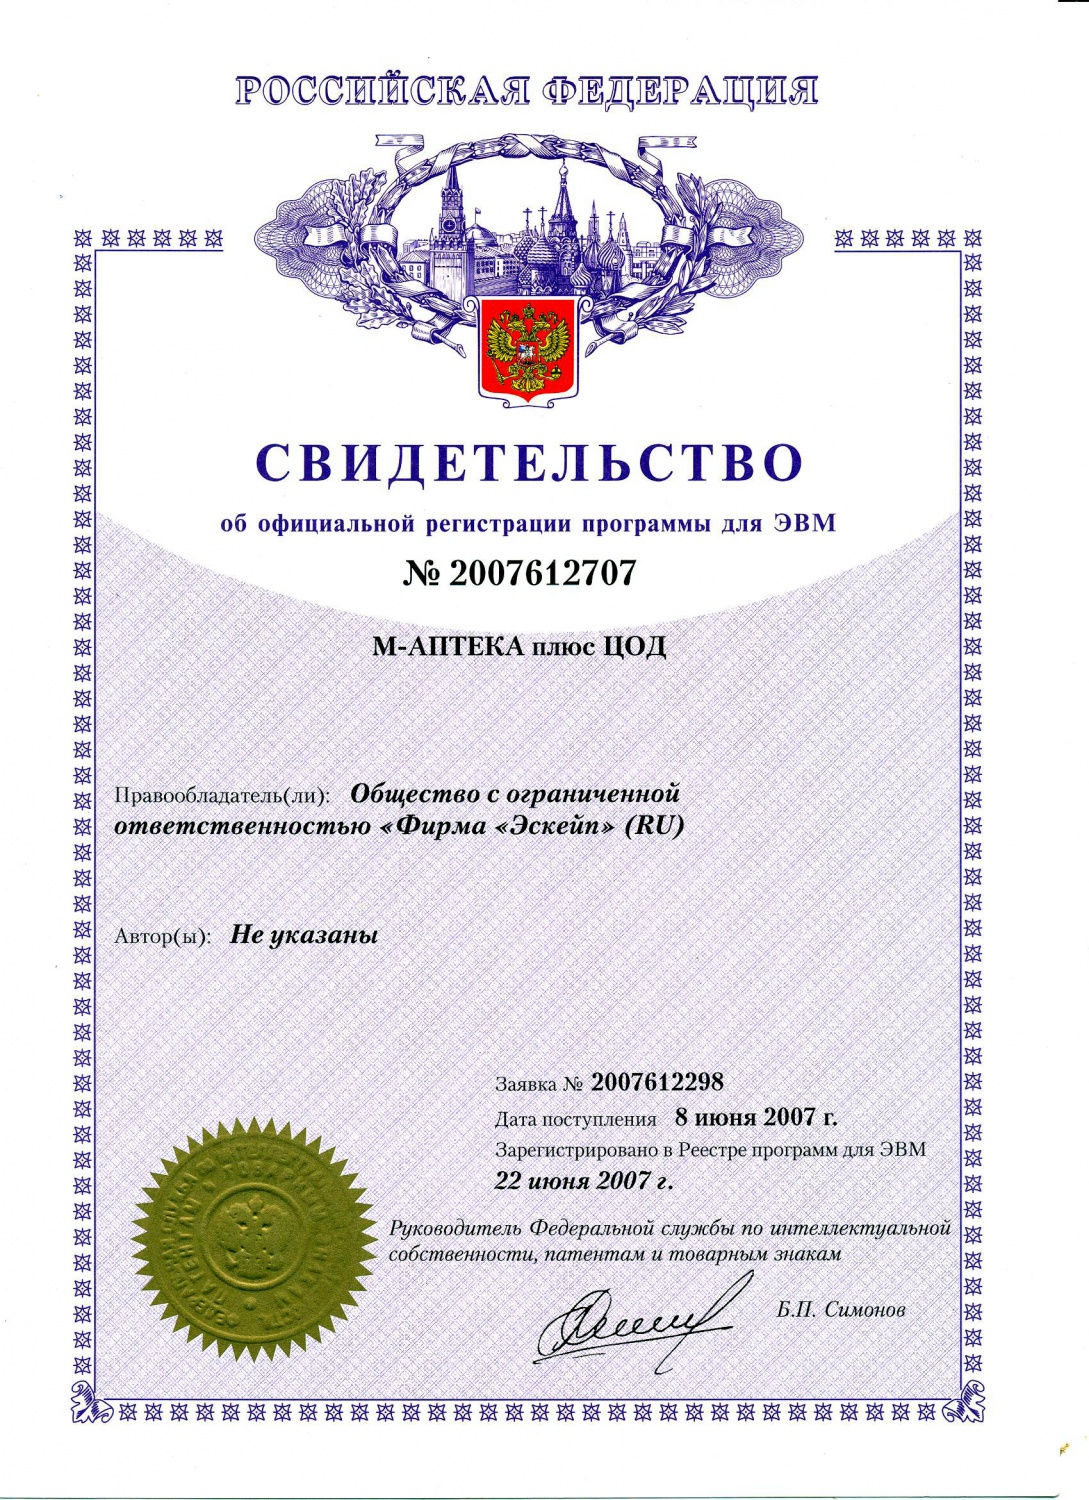 СВИДЕТЕЛЬСТВО об официальной регистрации программы для ЭВМ №2007612707